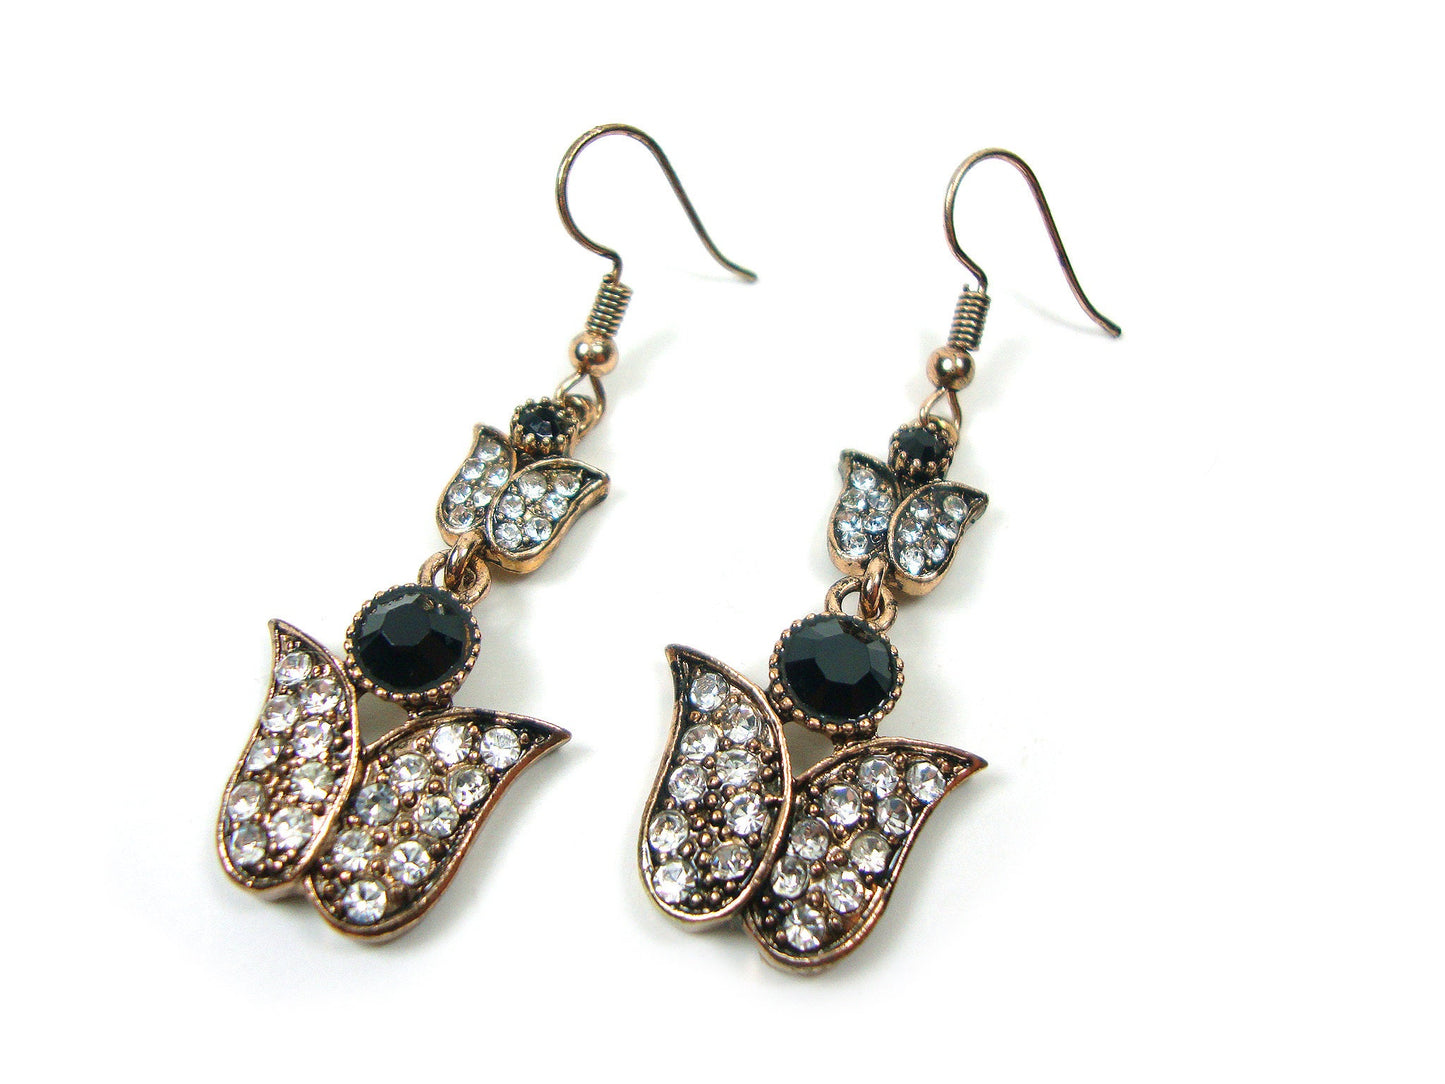 Byzantinische Ohrringe, Antik-Stil, schwarz-weiße Kristallsteine, Ohrringe, ethnische antike Ohrringe, byzantinische traditionelle Juwelen